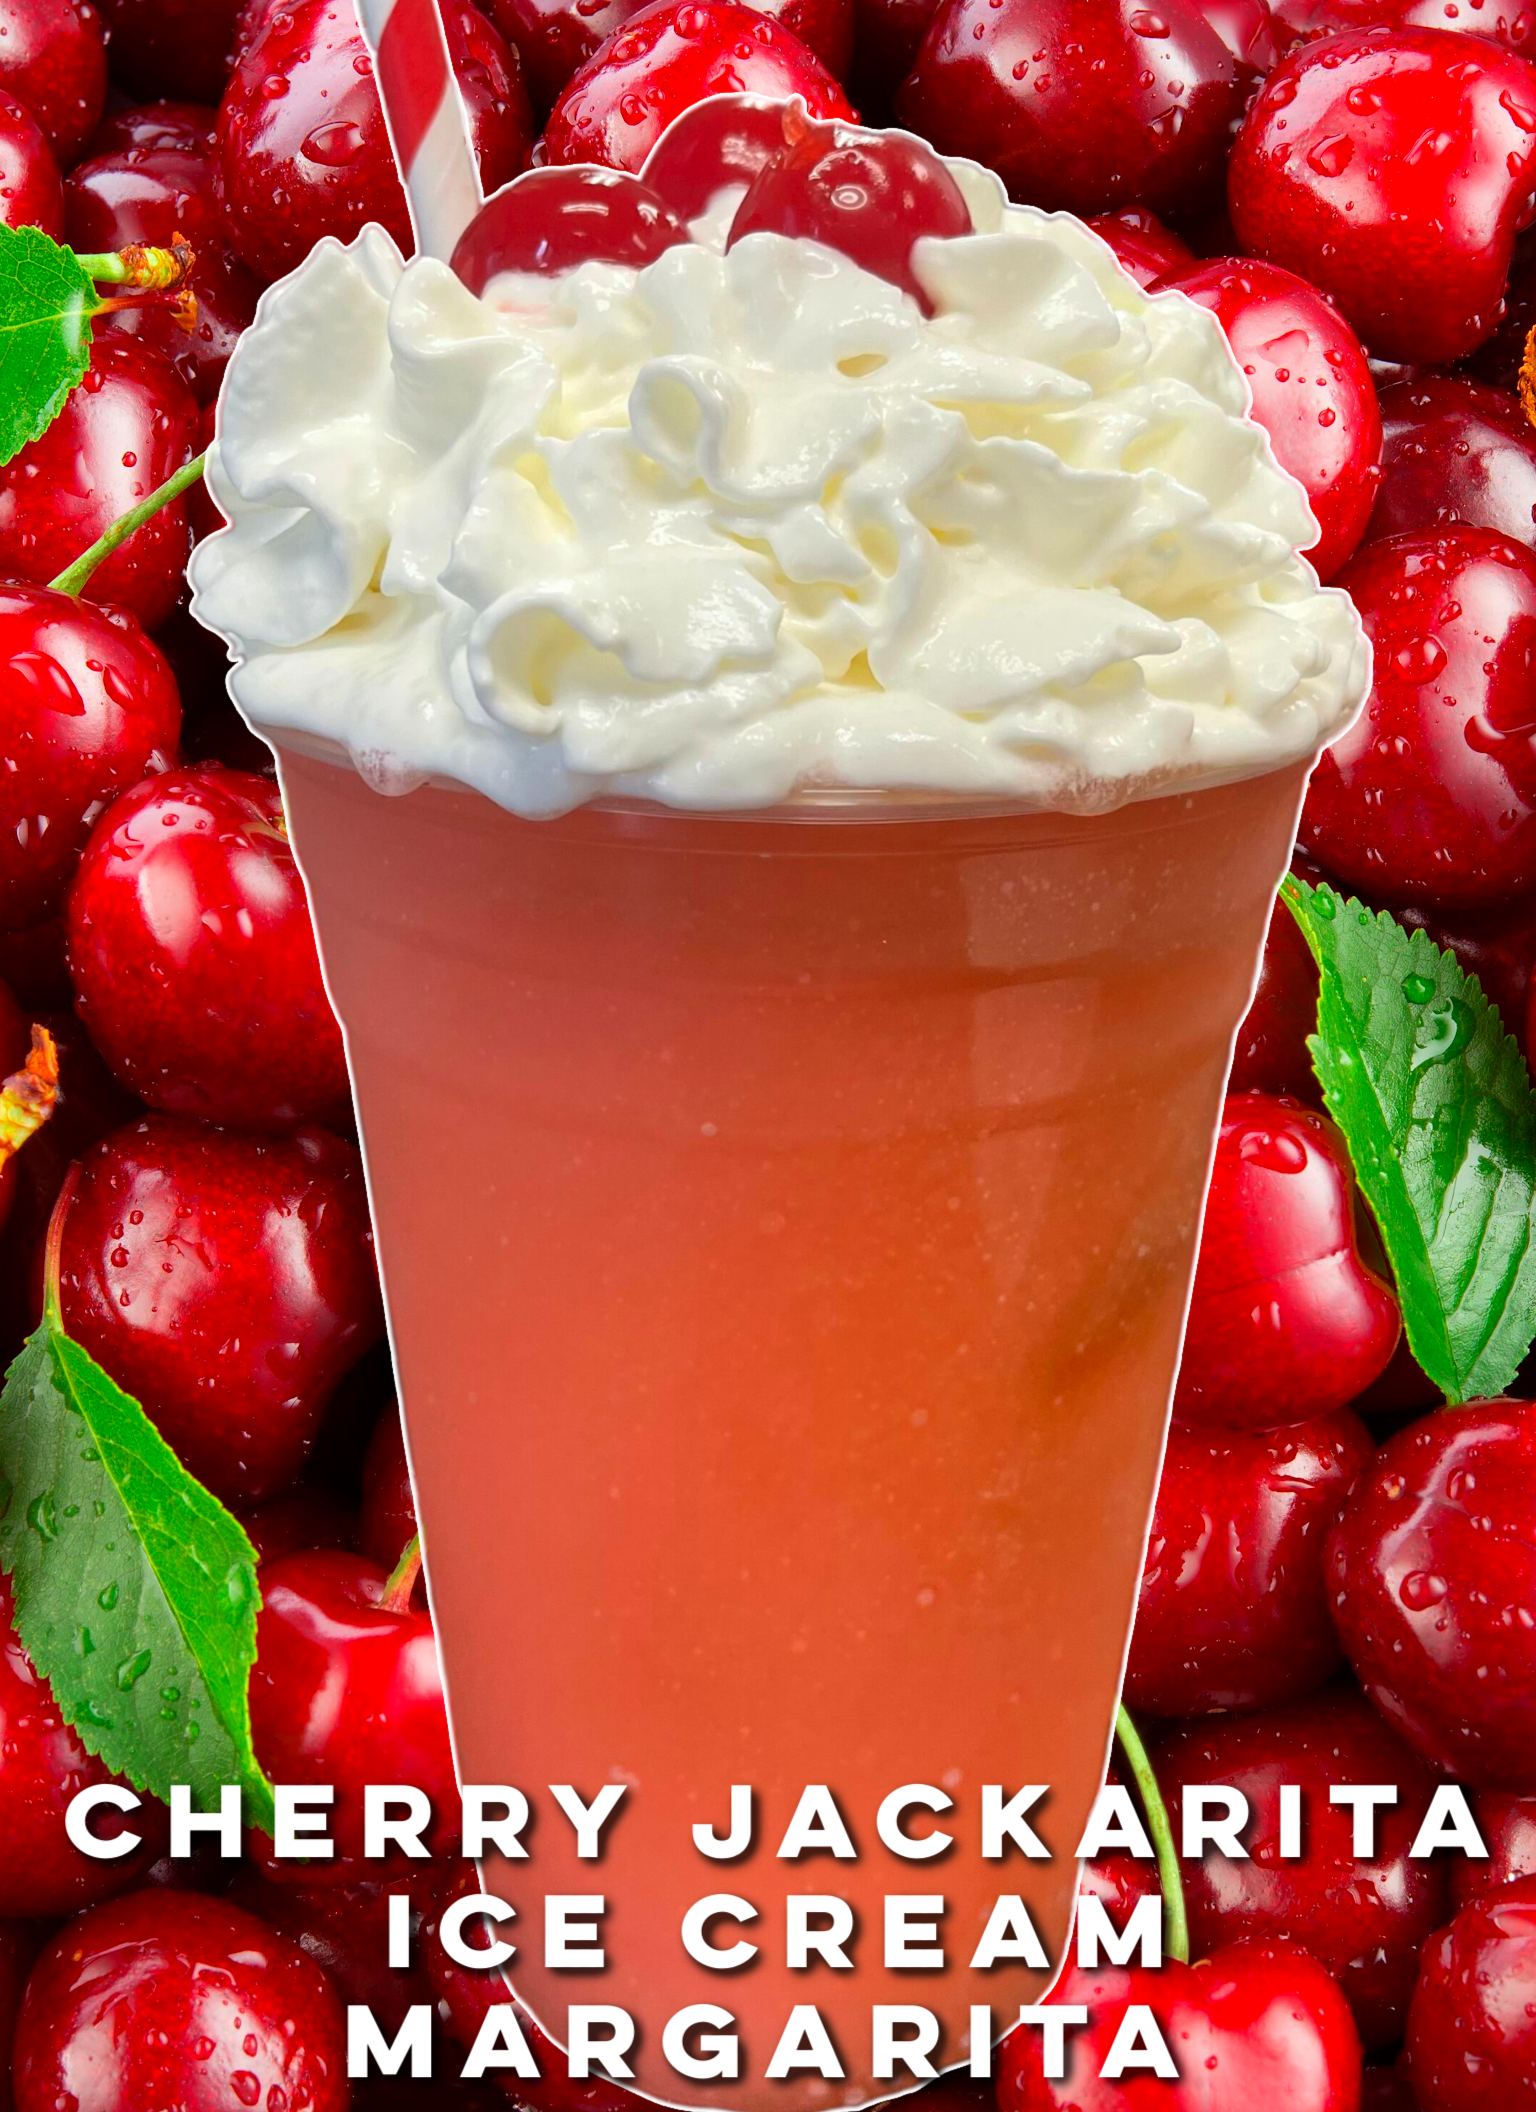 Cherry Jackarita Ice Cream Margarita